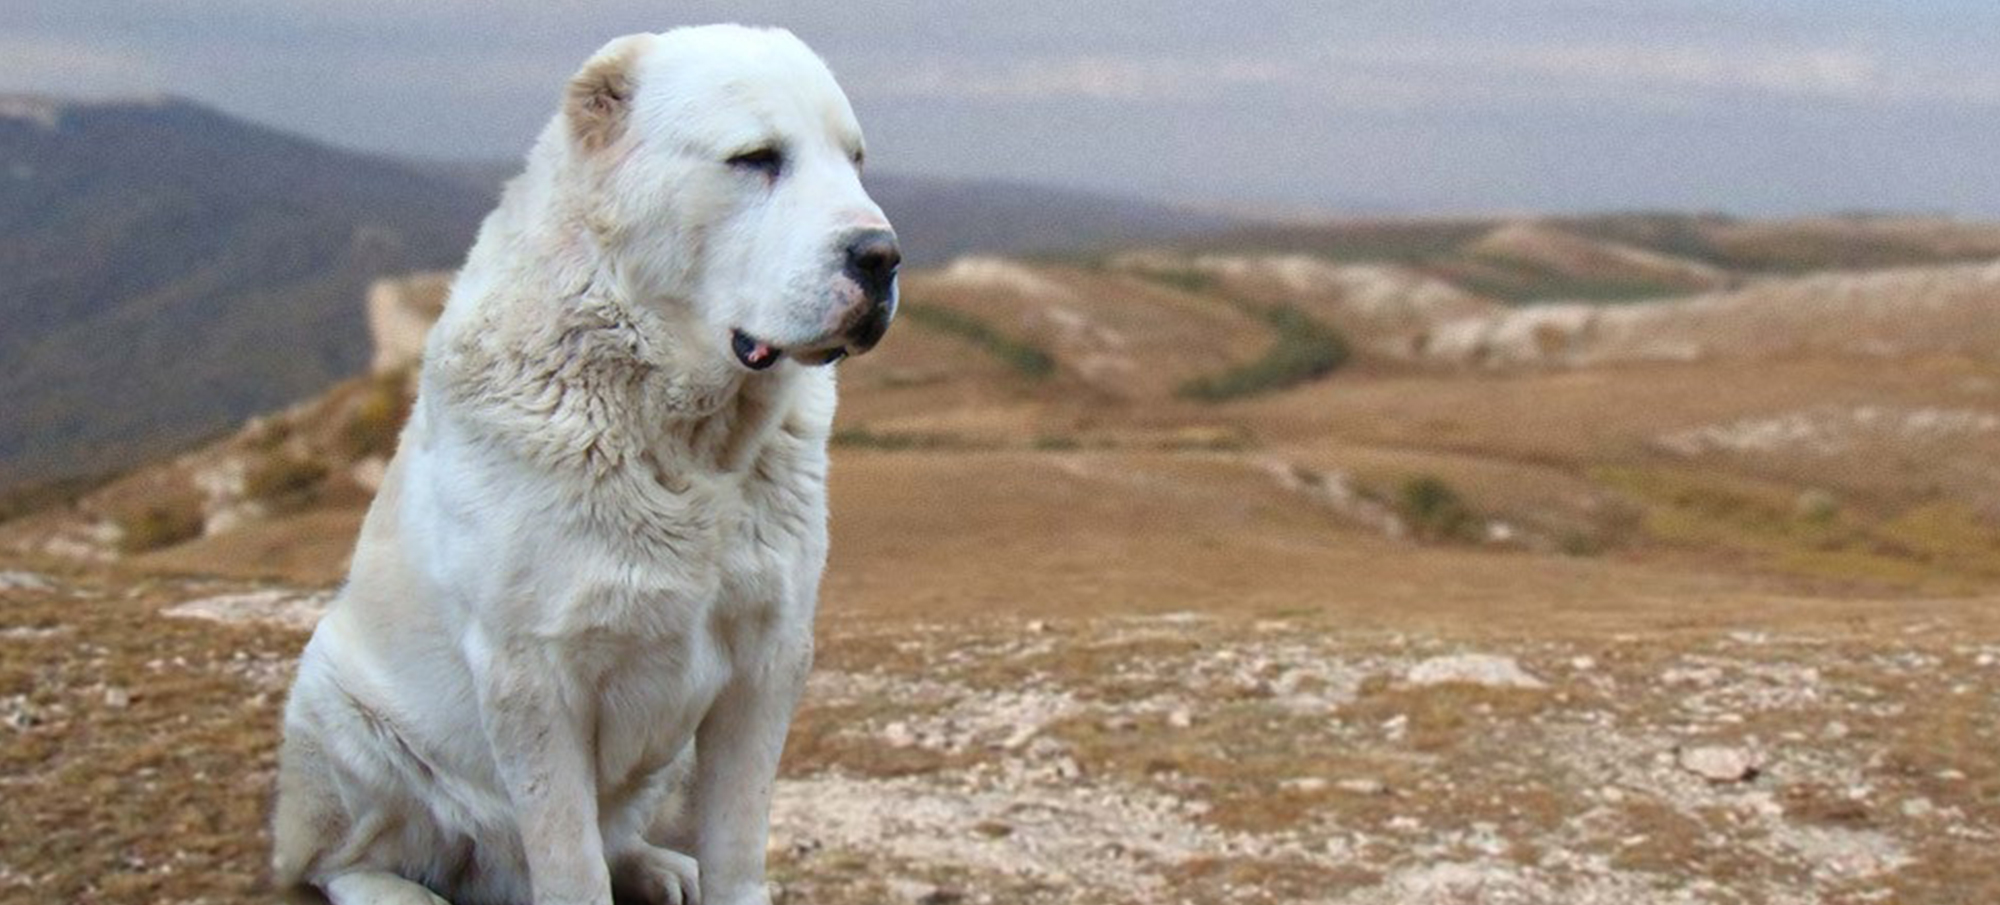 Central-Asian-Shepherd-Dog-2.jpg